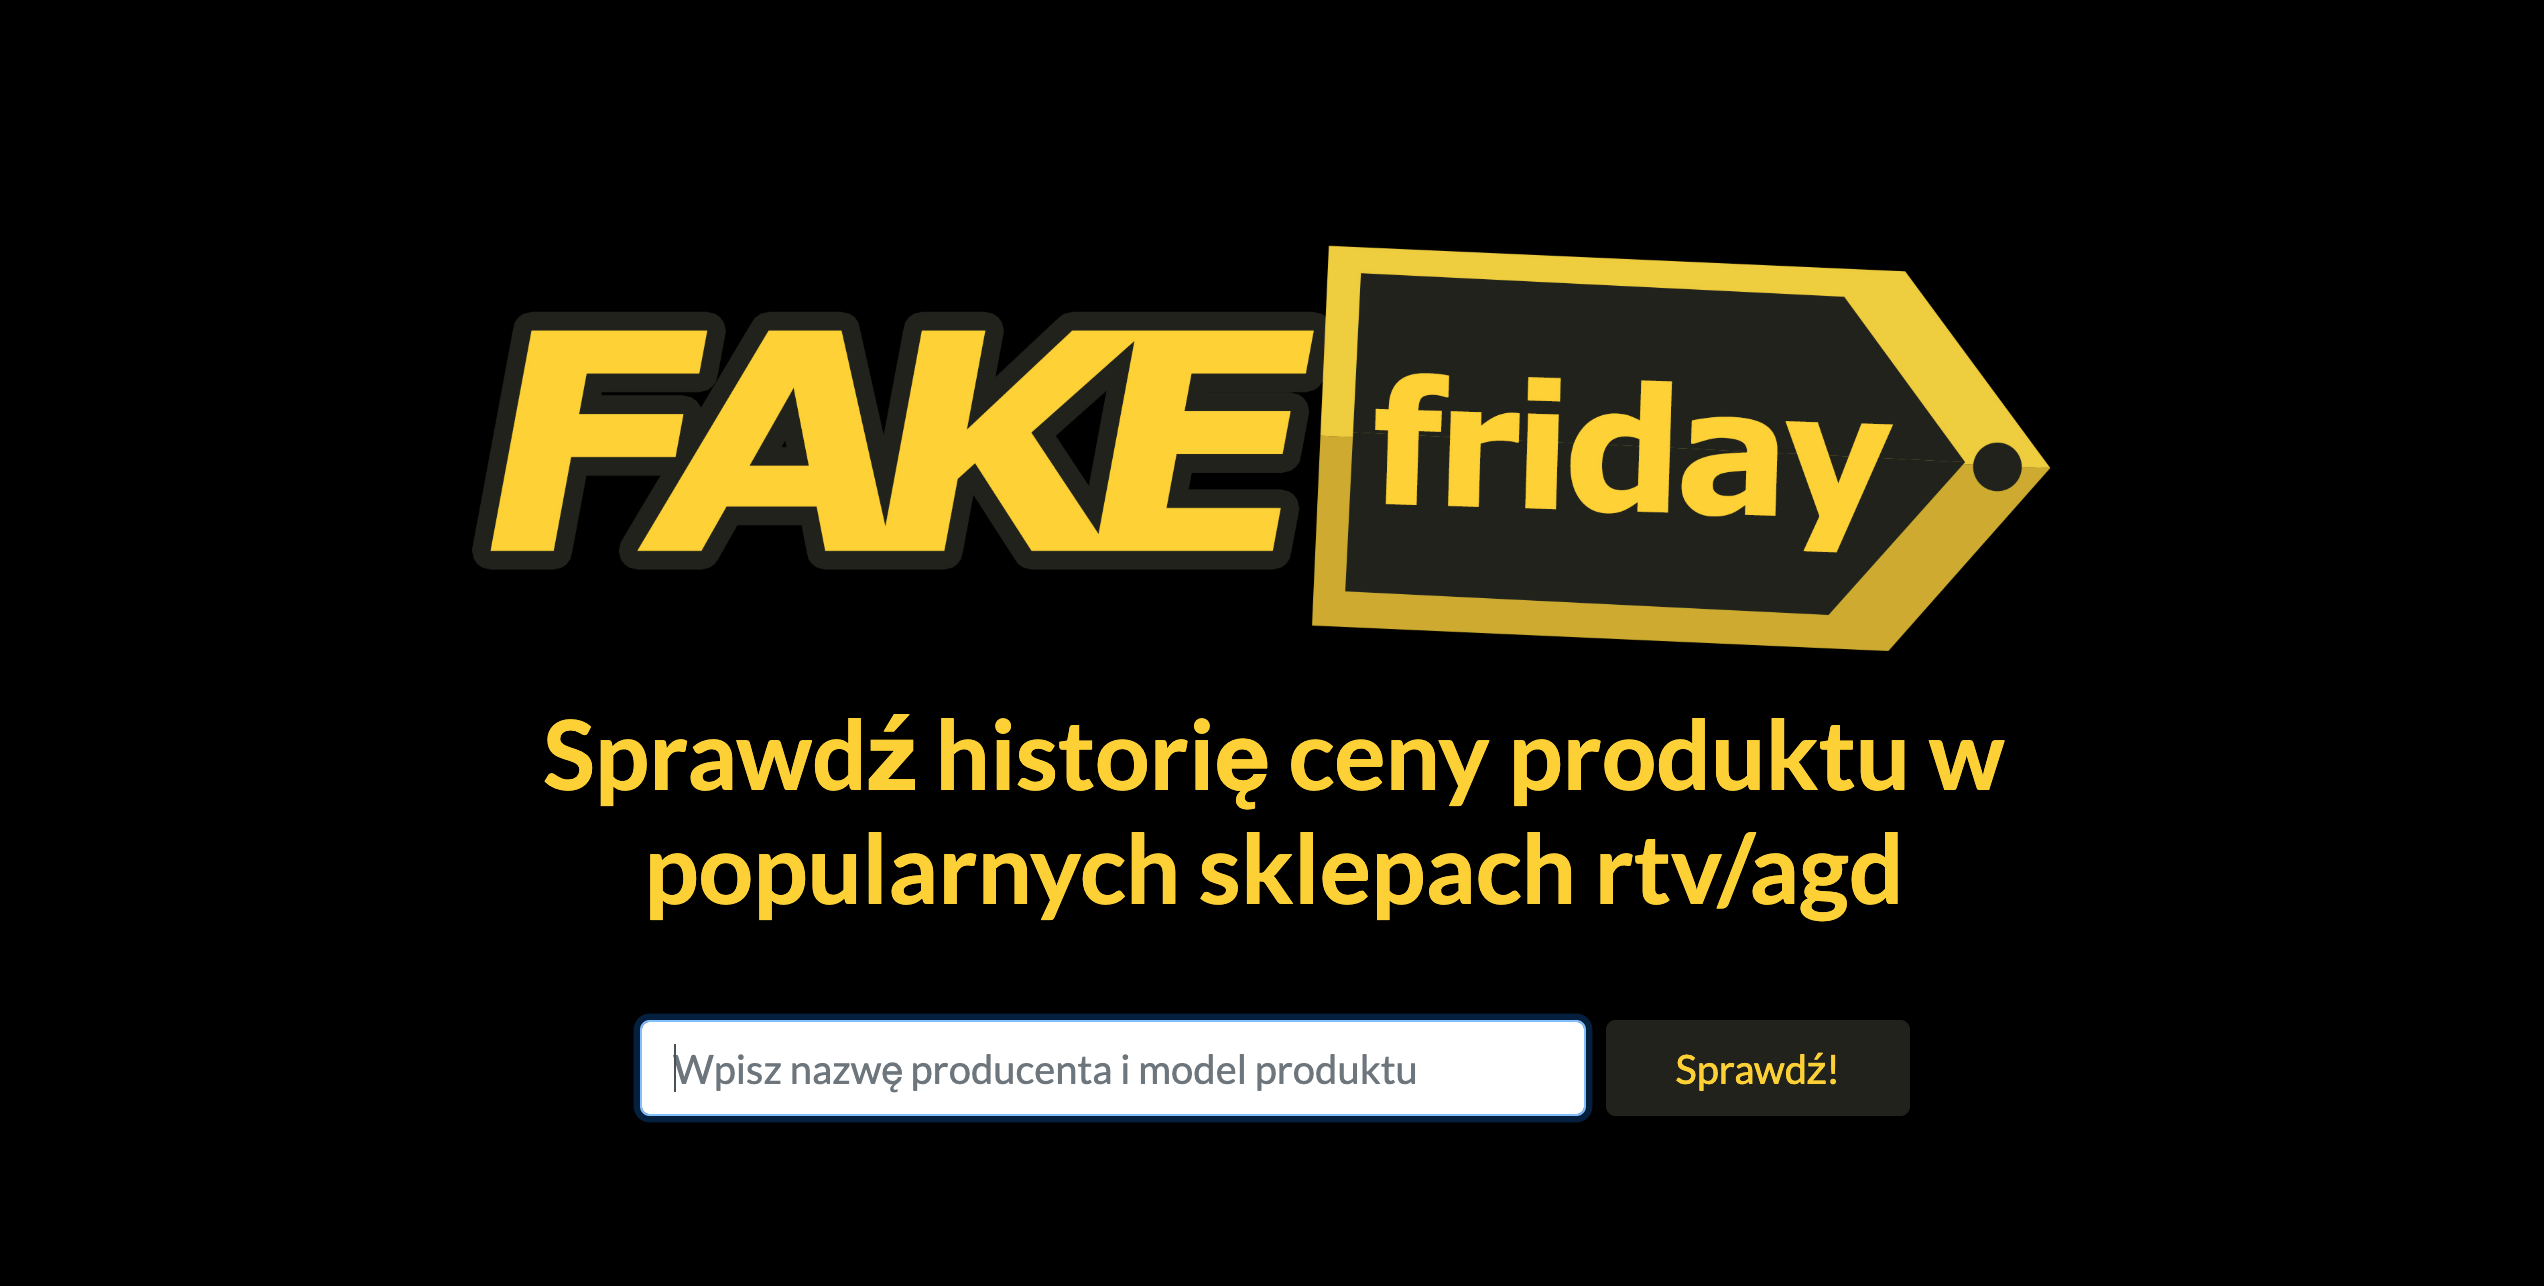 Fake Friday